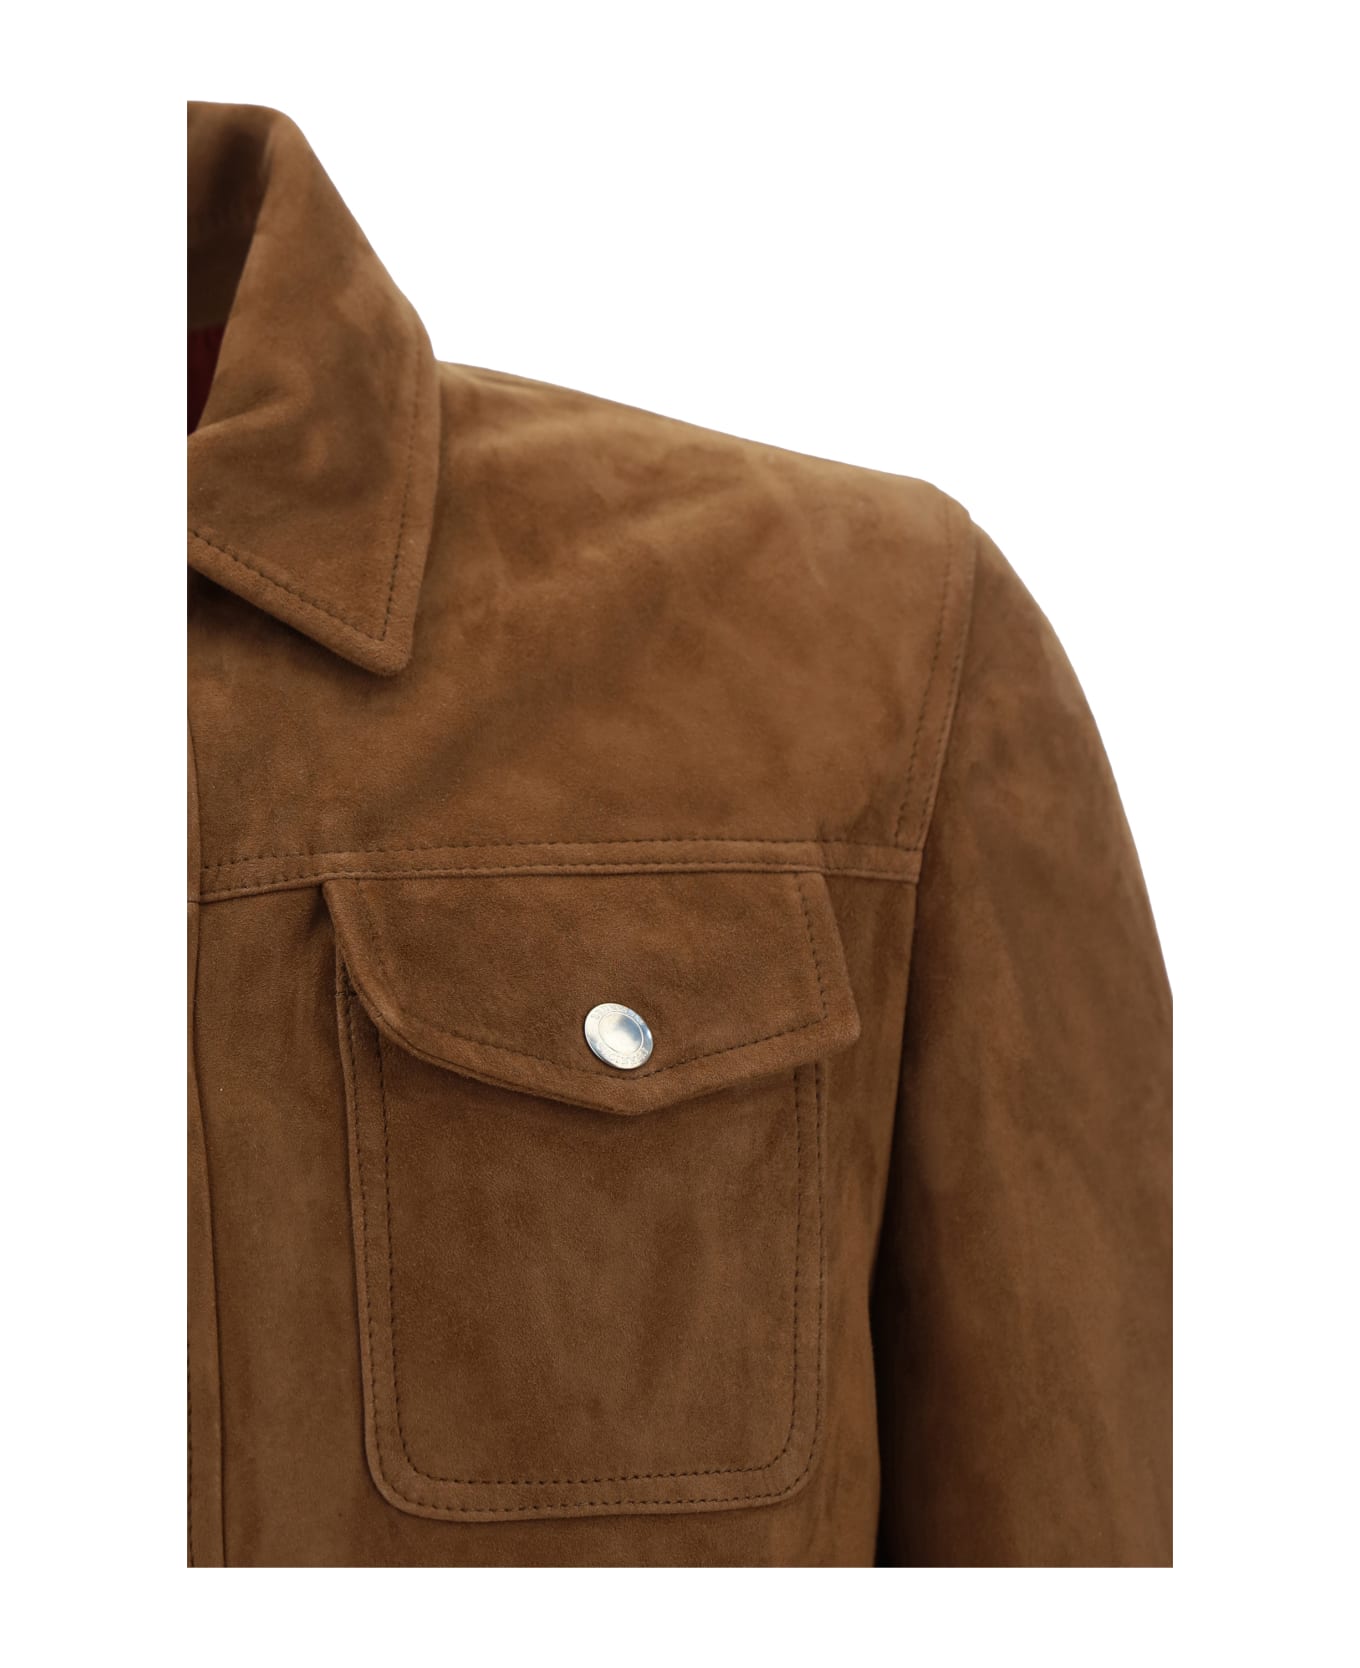 Brunello Cucinelli Leather Jacket - Cci71